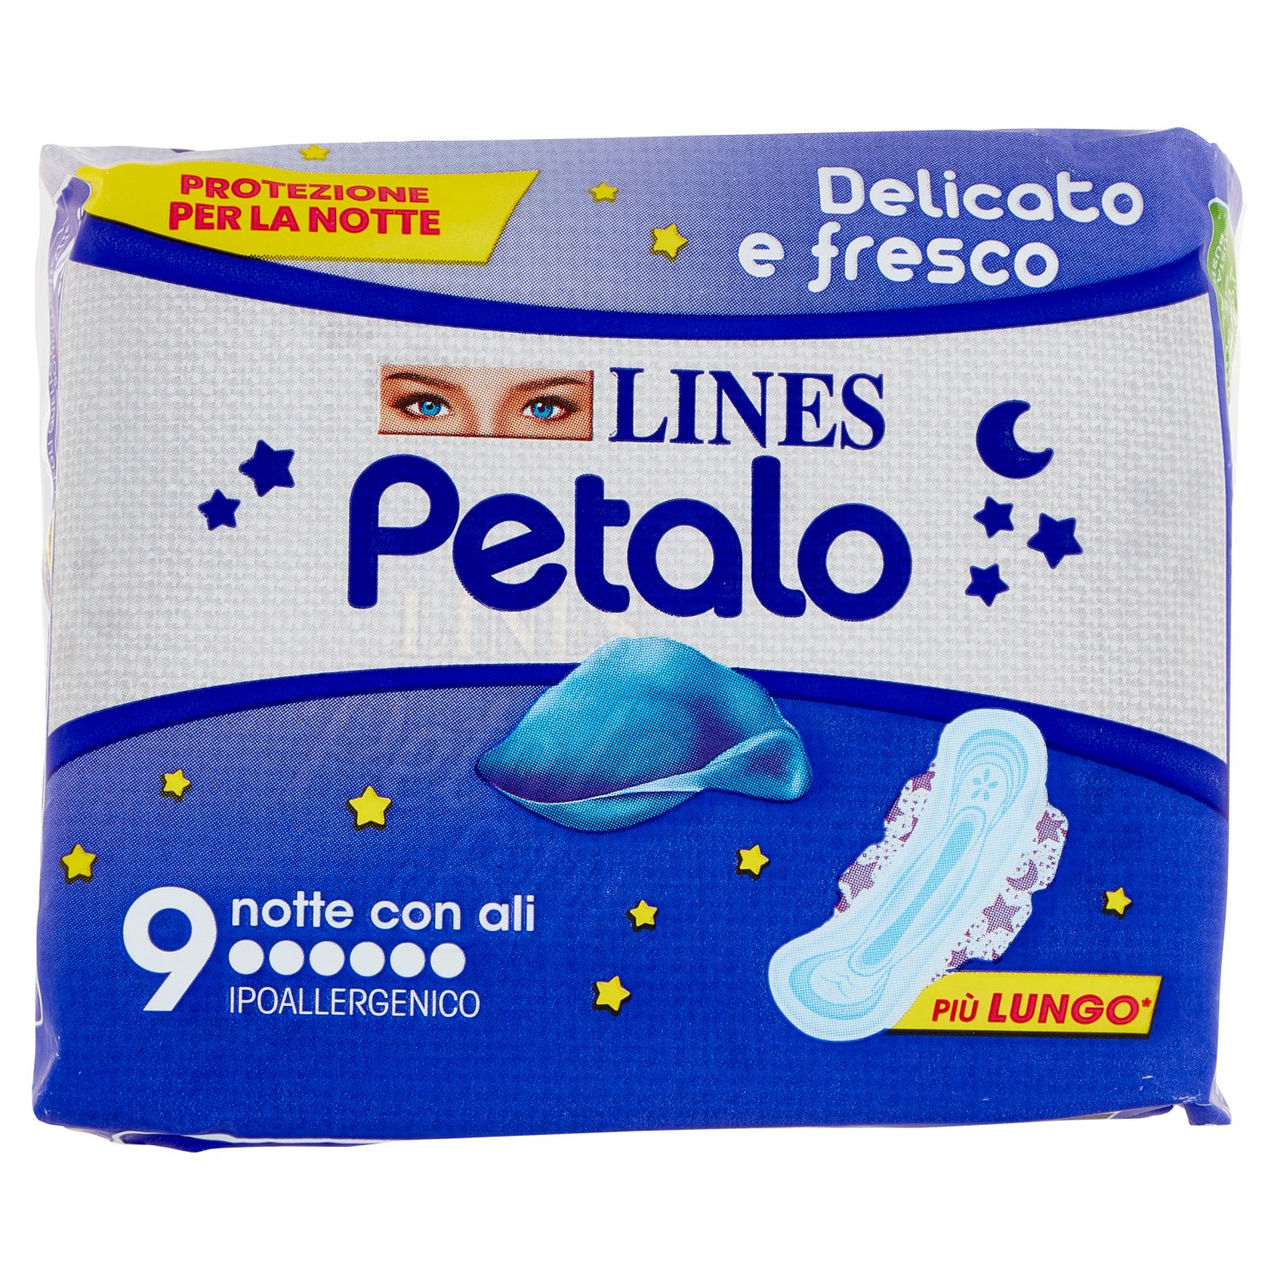 Lines Petalo notte con ali x 9 in vendita online